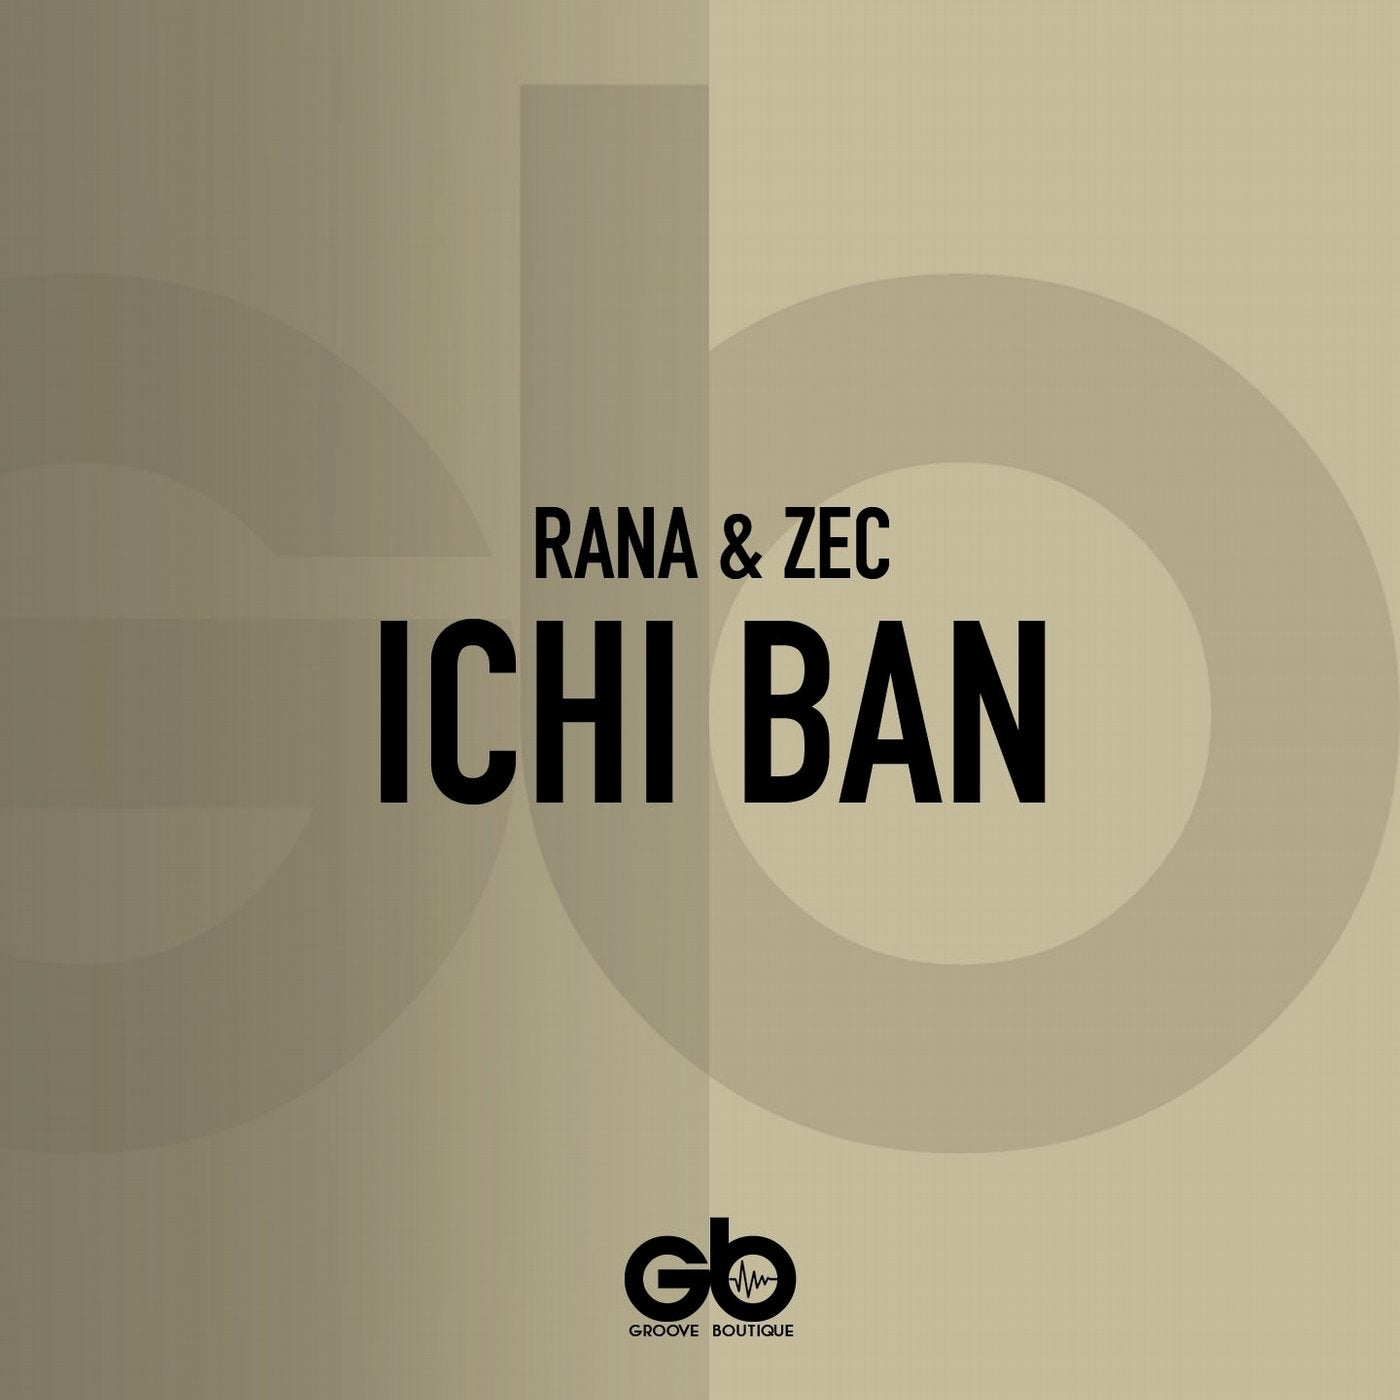 Ichi Ban